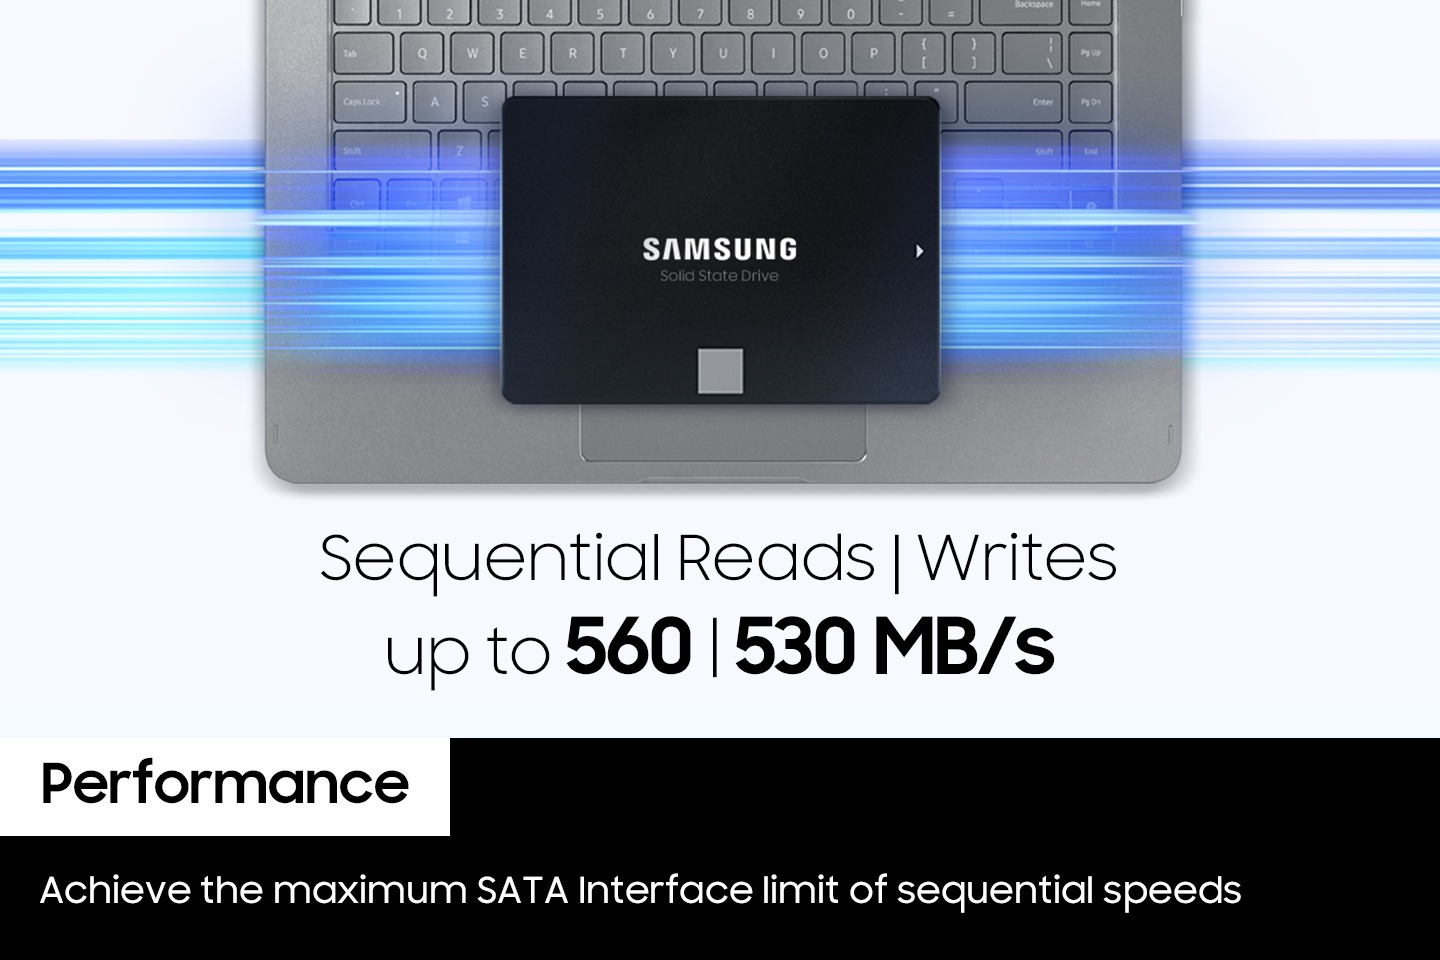 노트북 키보드 위에 내장 SSD의 정면 이미지가 노출되고 있으면 노트북과 내장 SSD 사이로 파란색상들의 불 빛이 가로로 길에 그어저 있습니다. 하단에는 영어로 sequential reads l writes up to 560 l 530 MB/s가 적혀저 있으며 왼쪽 하단에 흰색 배경에 박스에는 Performance 단어가 적혀 있고 단어 하단에 검은색 배경에 박스에는 영어로 Achieve the maximum SATA Interface limit of sequential speeds 라고 적혀 있습니다.